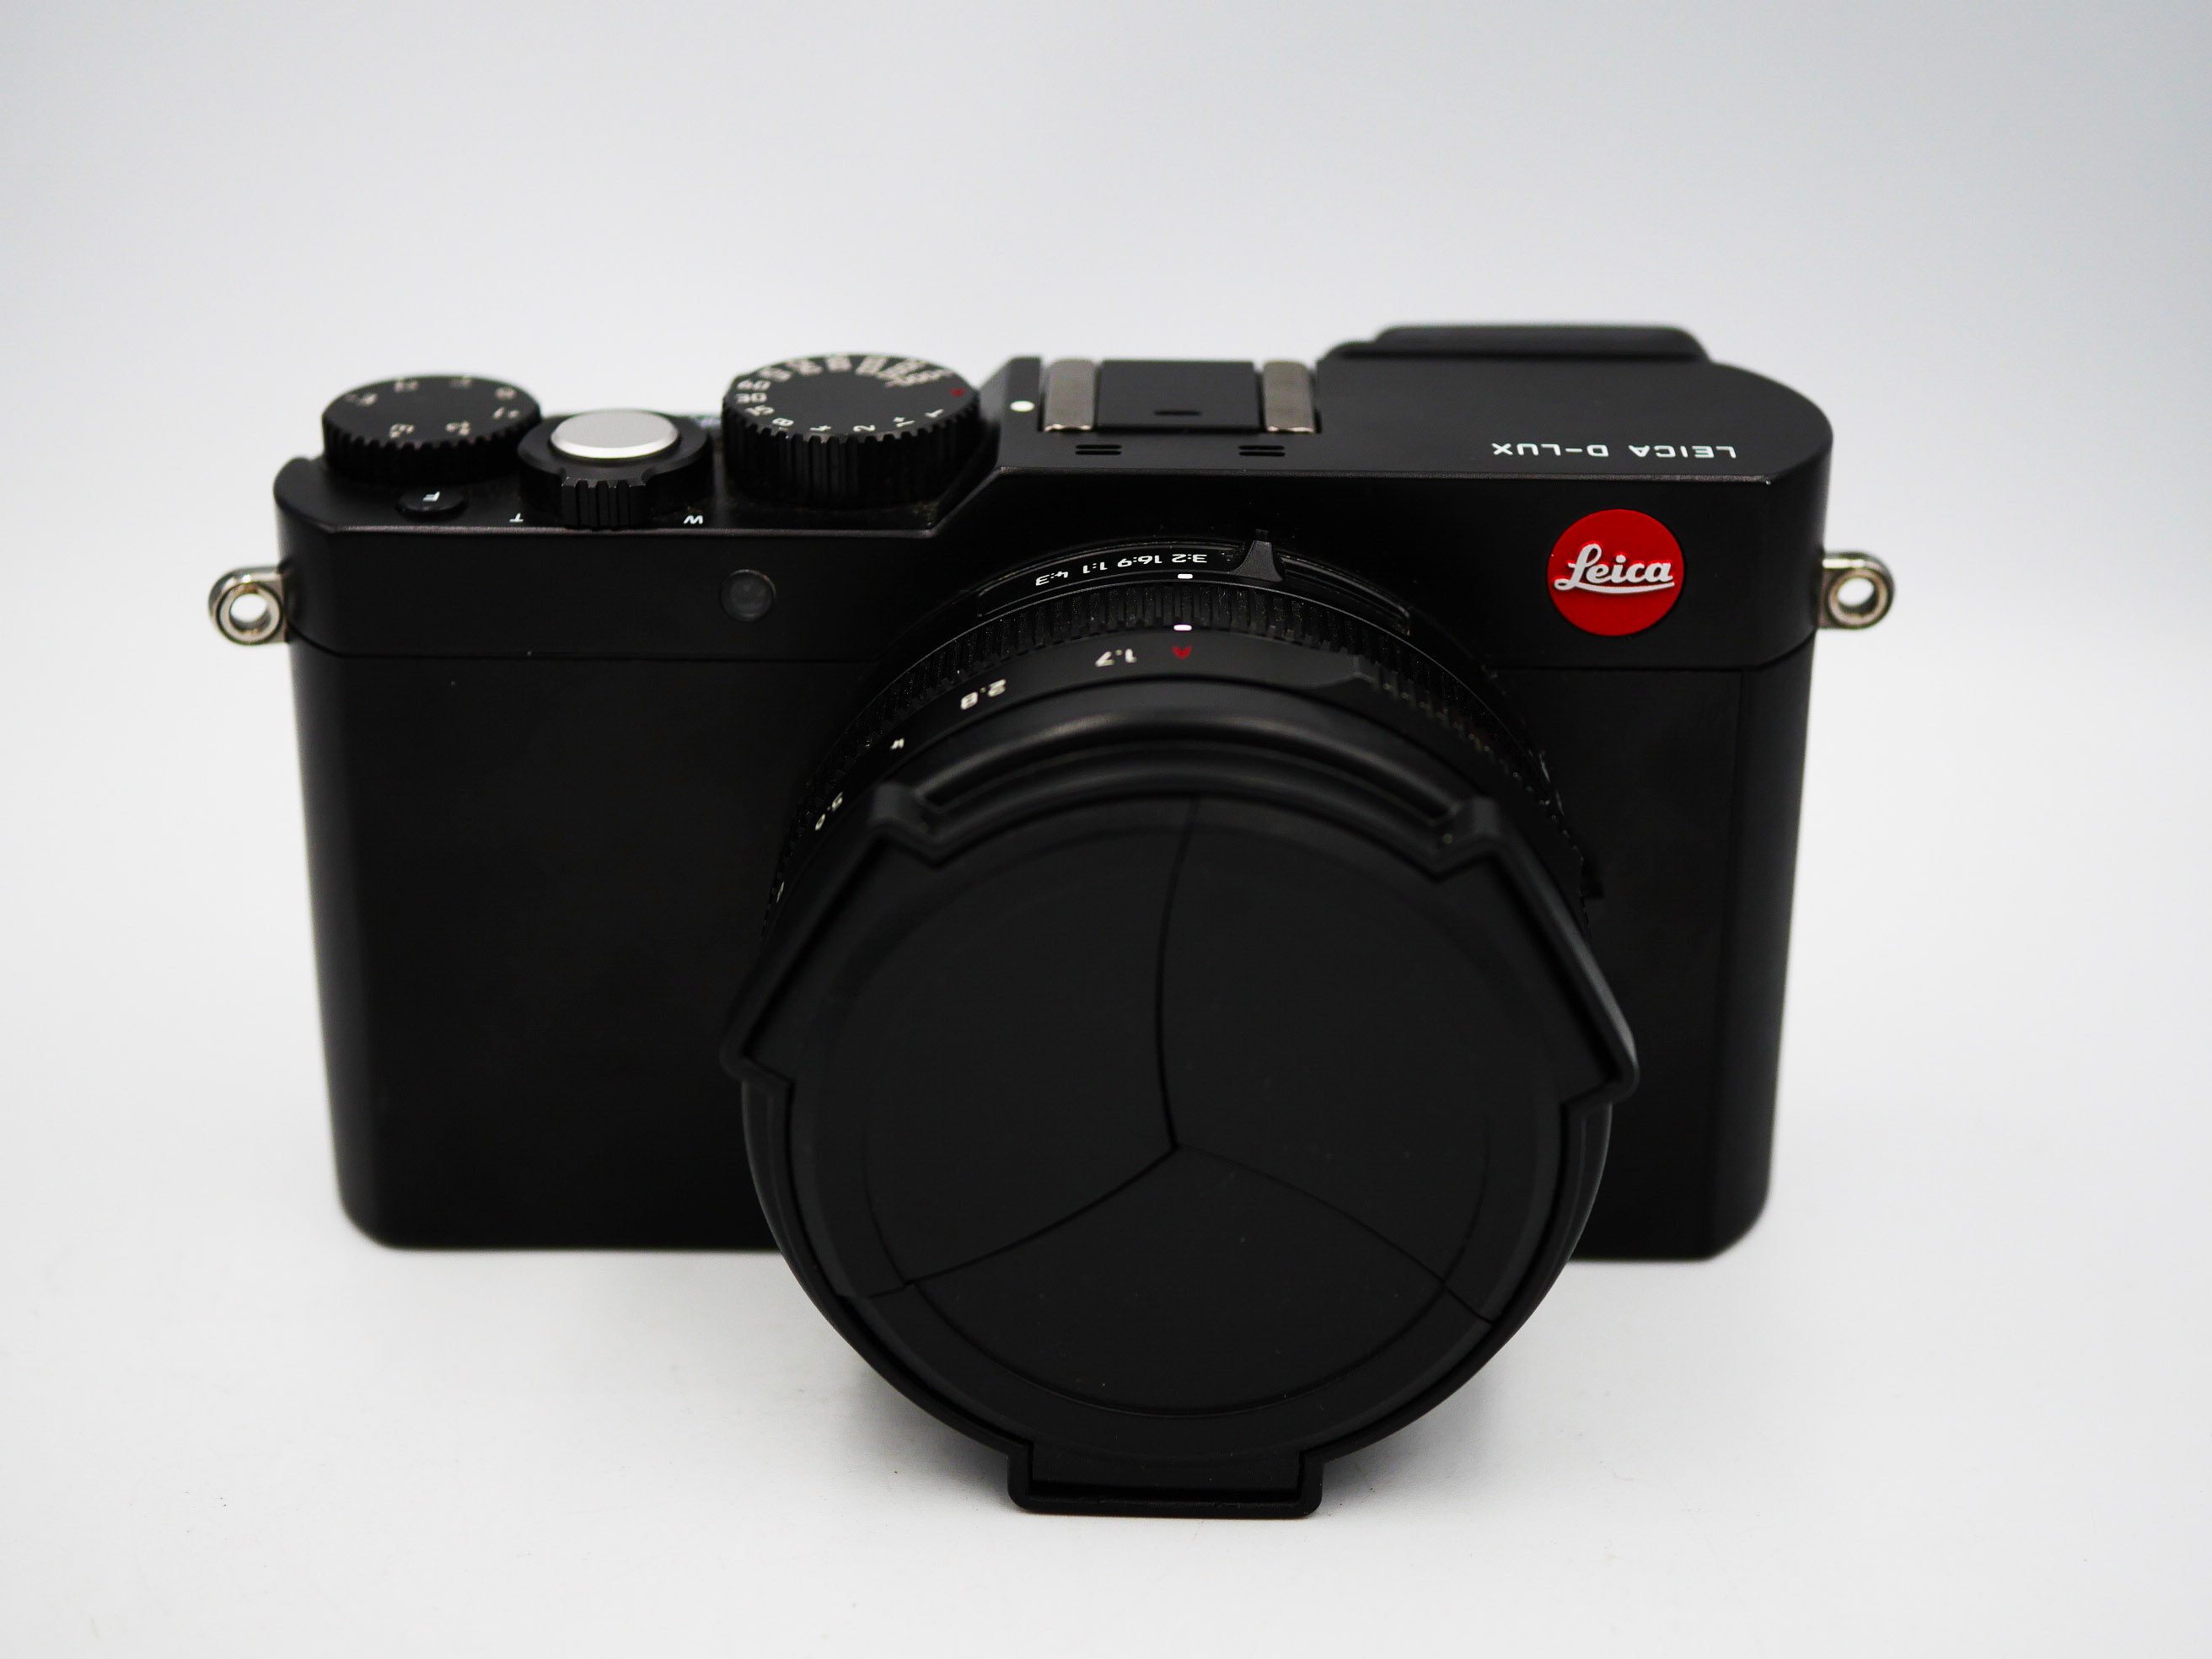 Leica D-LUX 6 Black Lens Leica DC Vario-summilux 24-90 Mm 